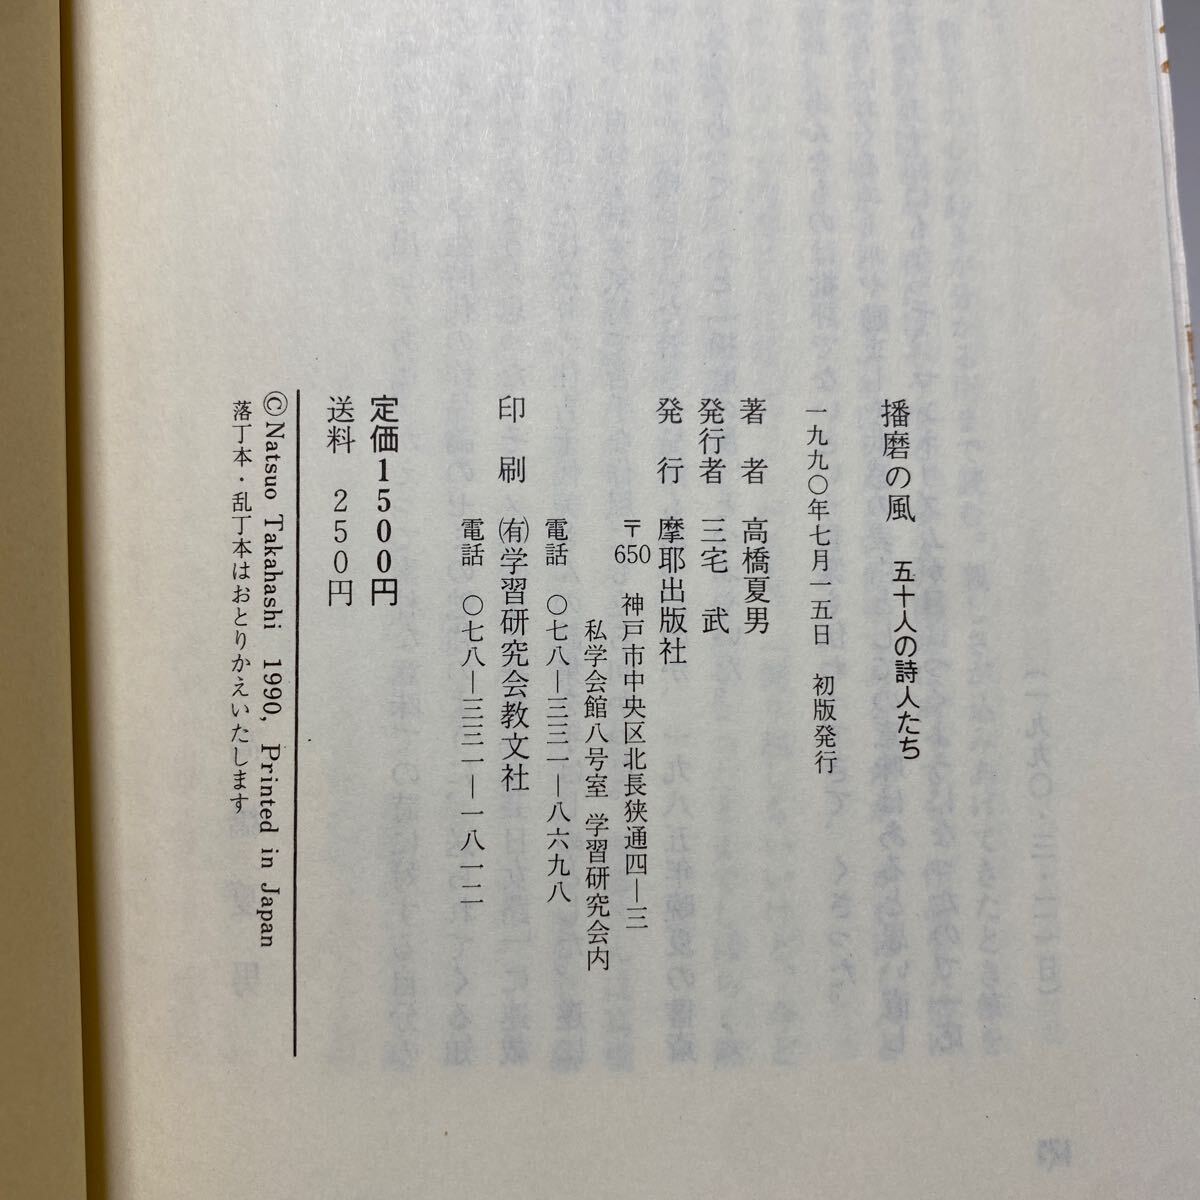 ア1/播磨の風 五十人の詩人たち 高橋夏男 摩耶出版社 1990年 ゆうメール送料180円_画像6